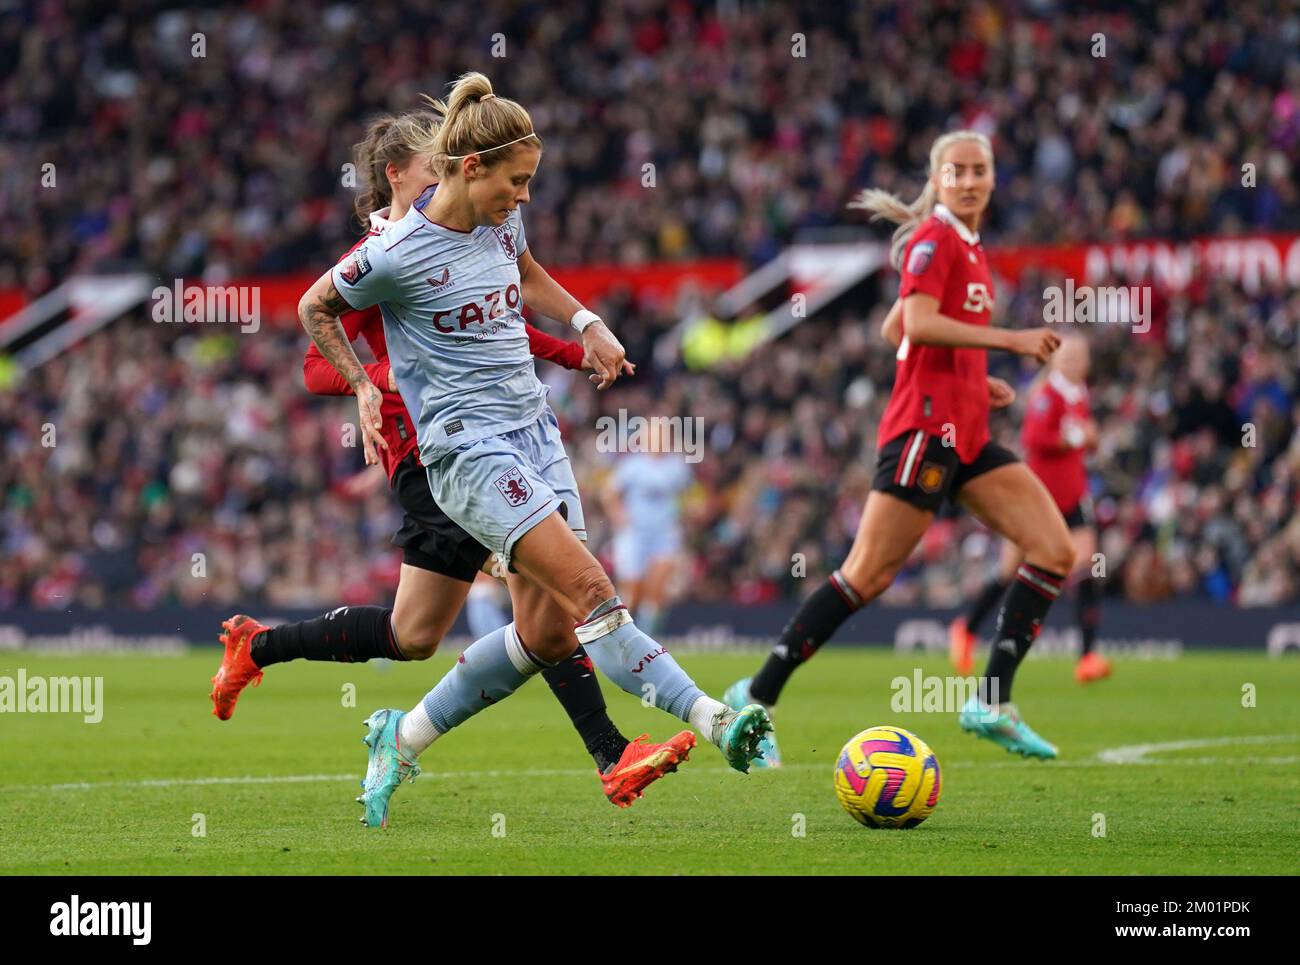 Rachel Daly de Aston Villa dispara al gol durante el partido de la Superliga Femenina Barclays en Old Trafford, Manchester. Fecha de la foto: Sábado 3 de diciembre de 2022. Foto de stock